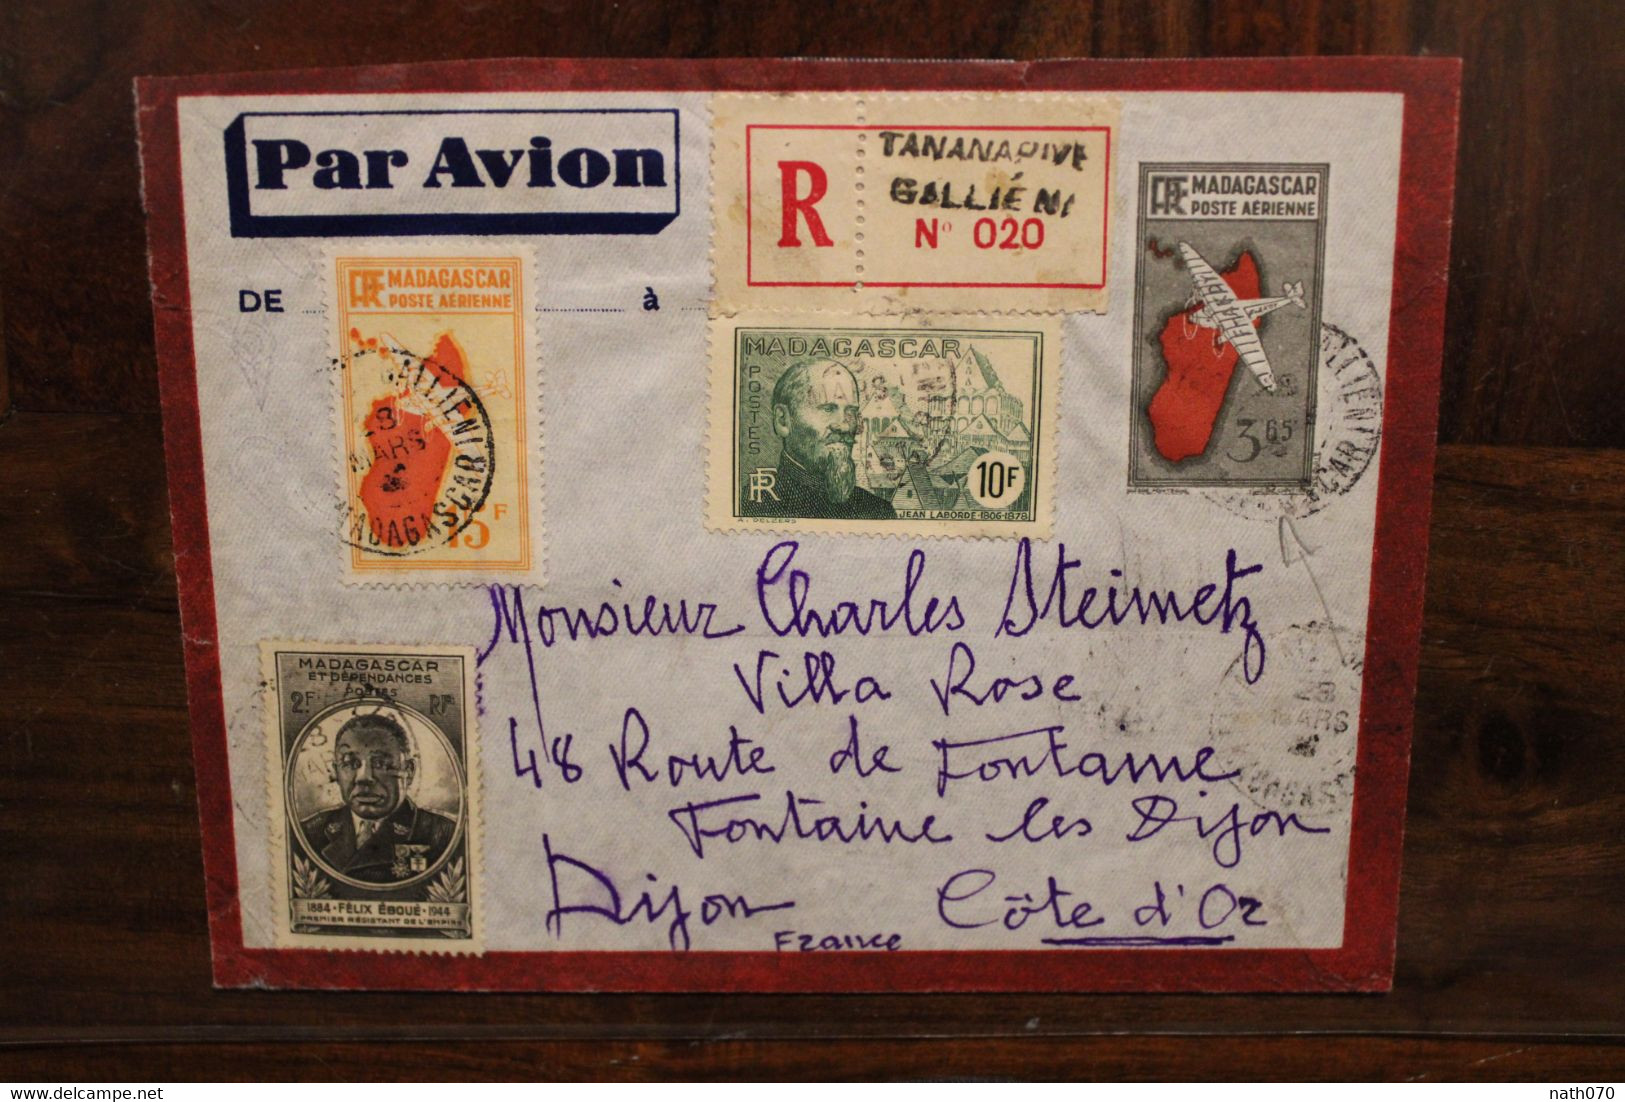 1946 Madagascar France Fontaine Les Dijon Cover Recommandé Registered Reco - Briefe U. Dokumente